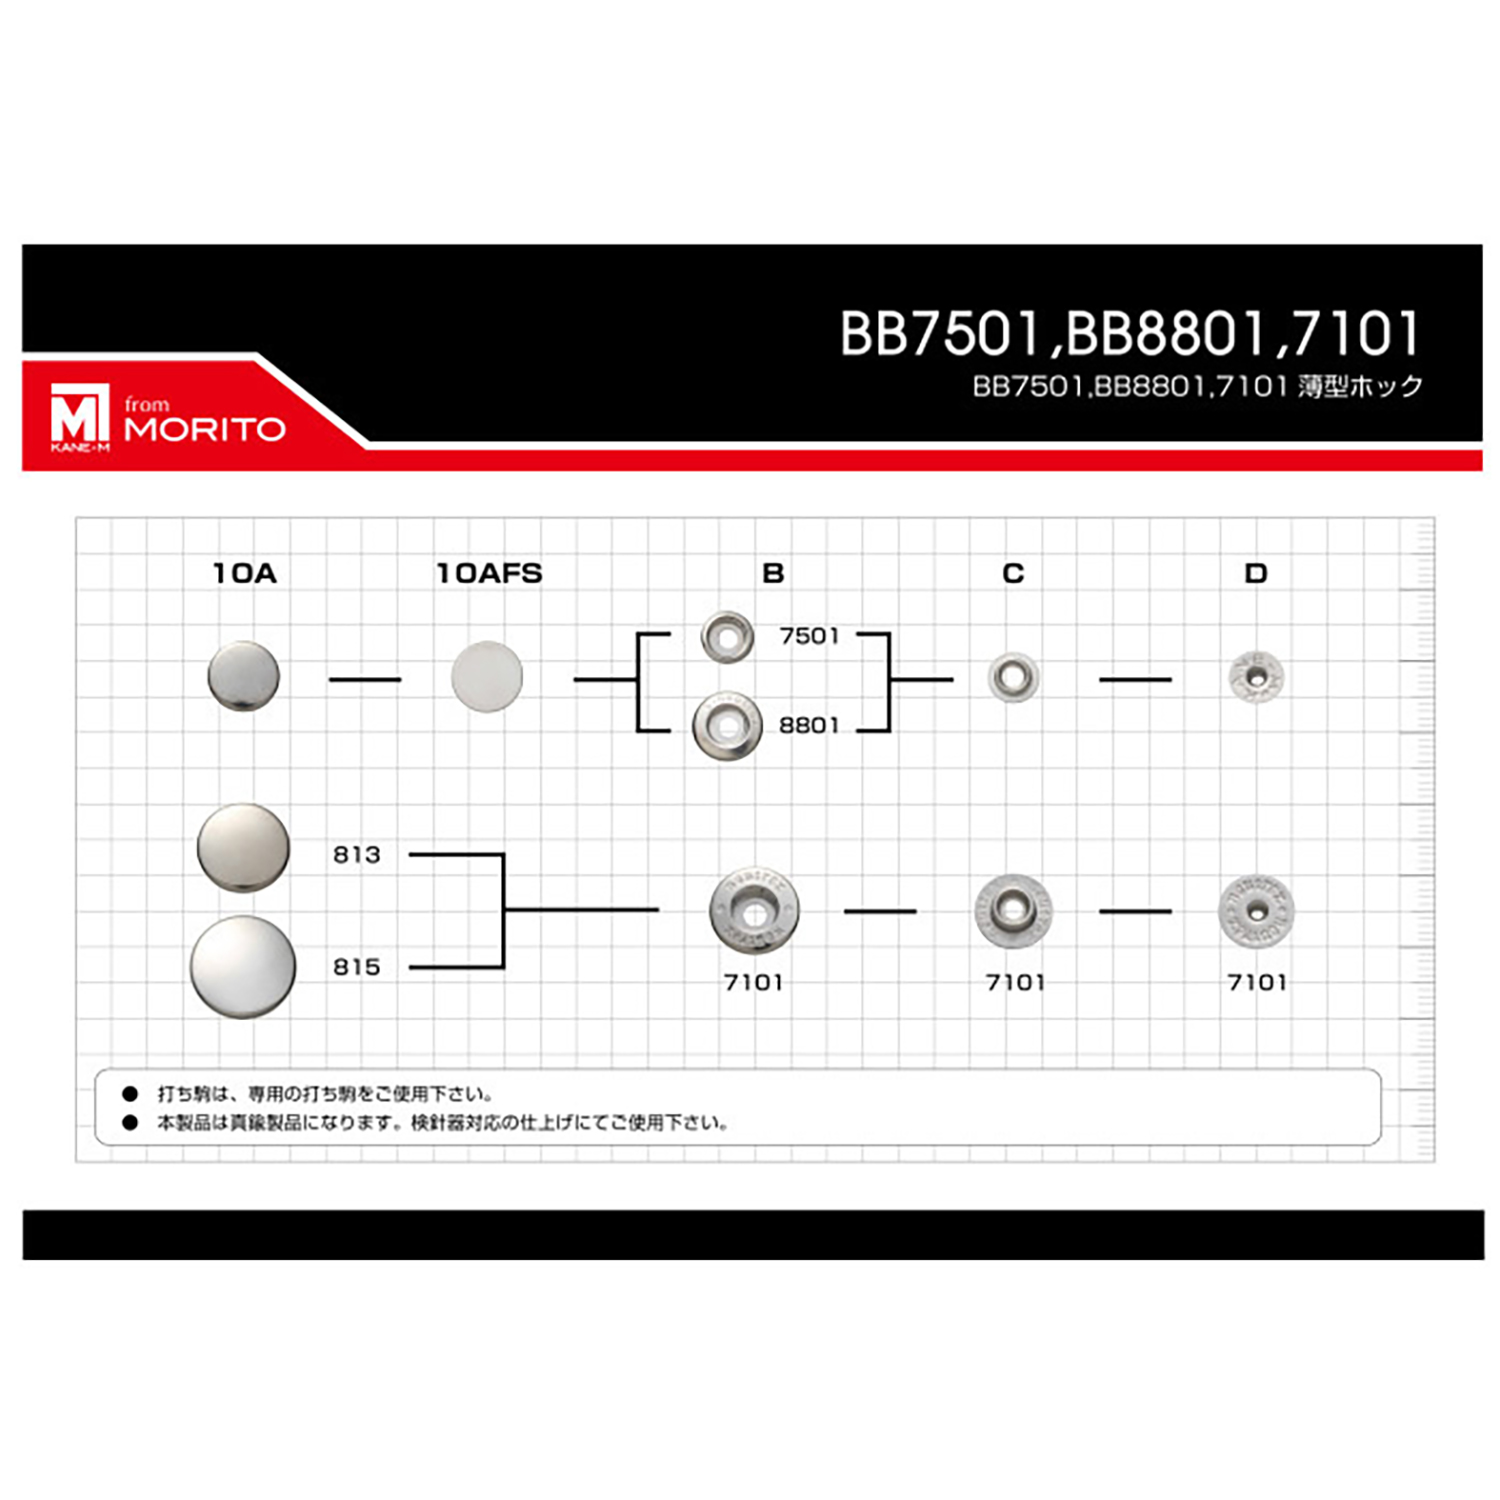 8801 8801B/C/D アンダーパーツ(バネ/ゲンコ/ホソSET)[ドットボタン・ハトメ] モリト(MORITO)